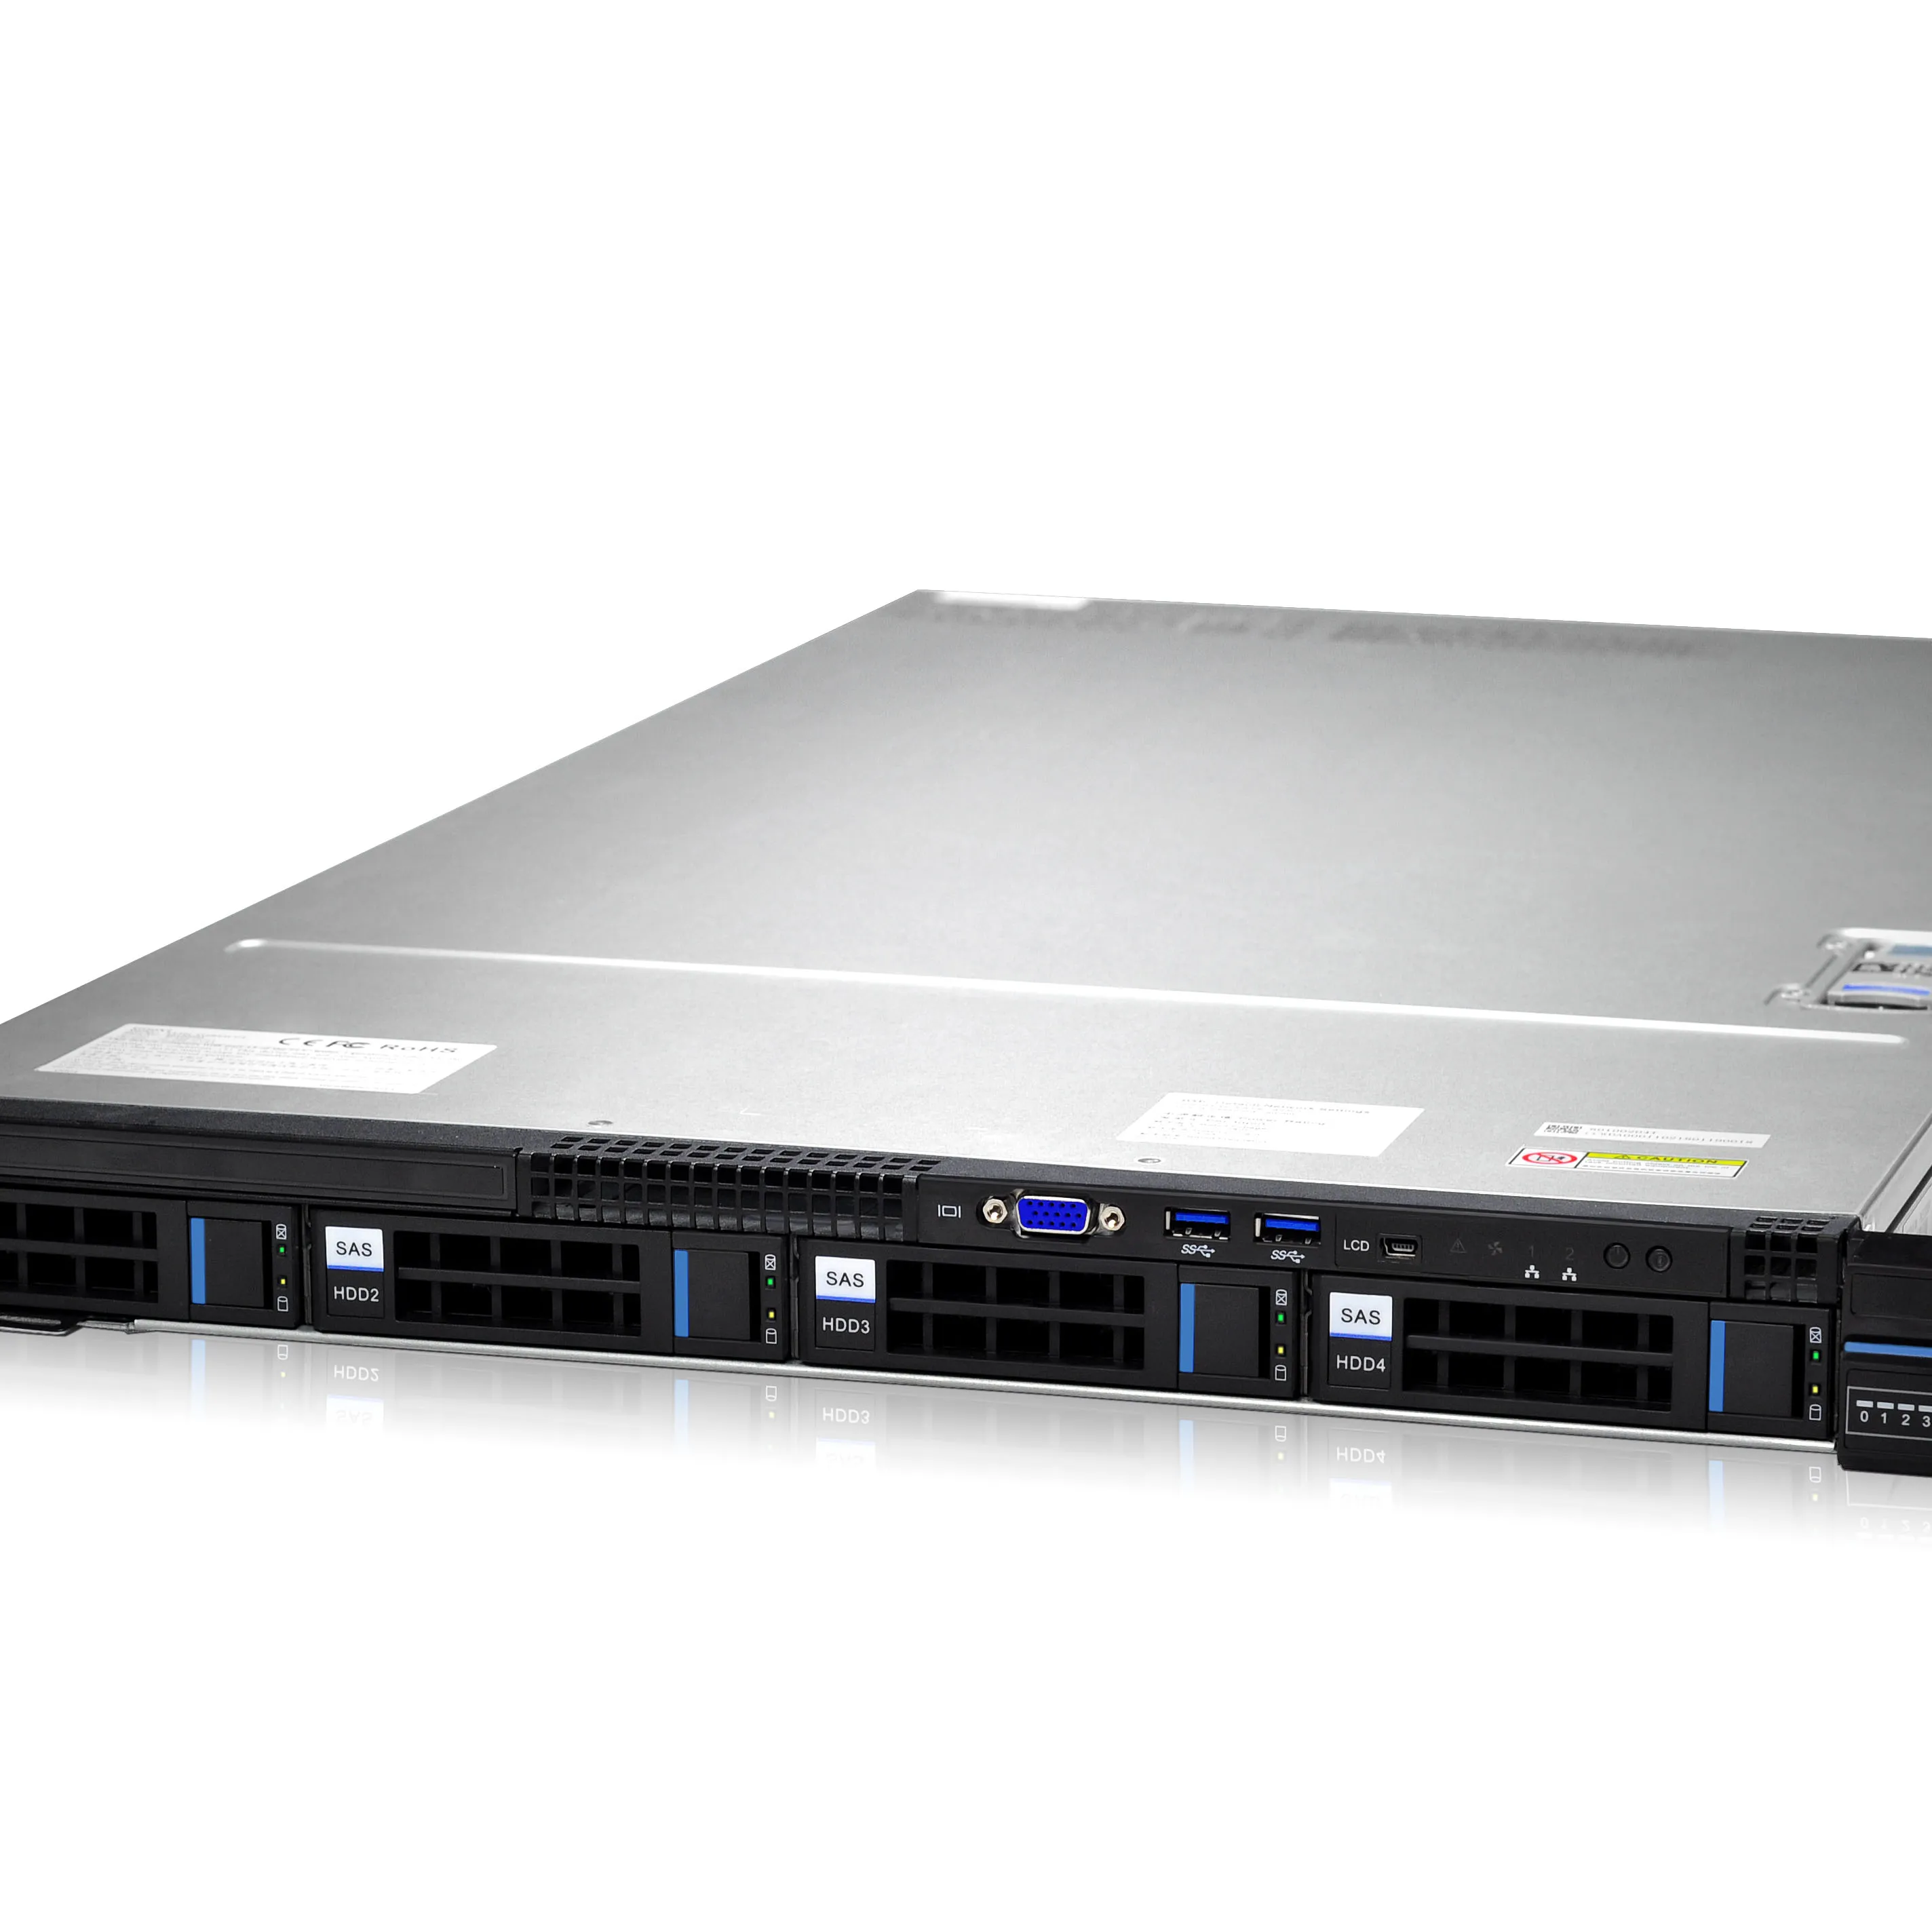 Gooxi 1U 4 bays Rackmount server chassis 12Gb/s SAS passive backplane with SGPIO, SAS and SATA HDD